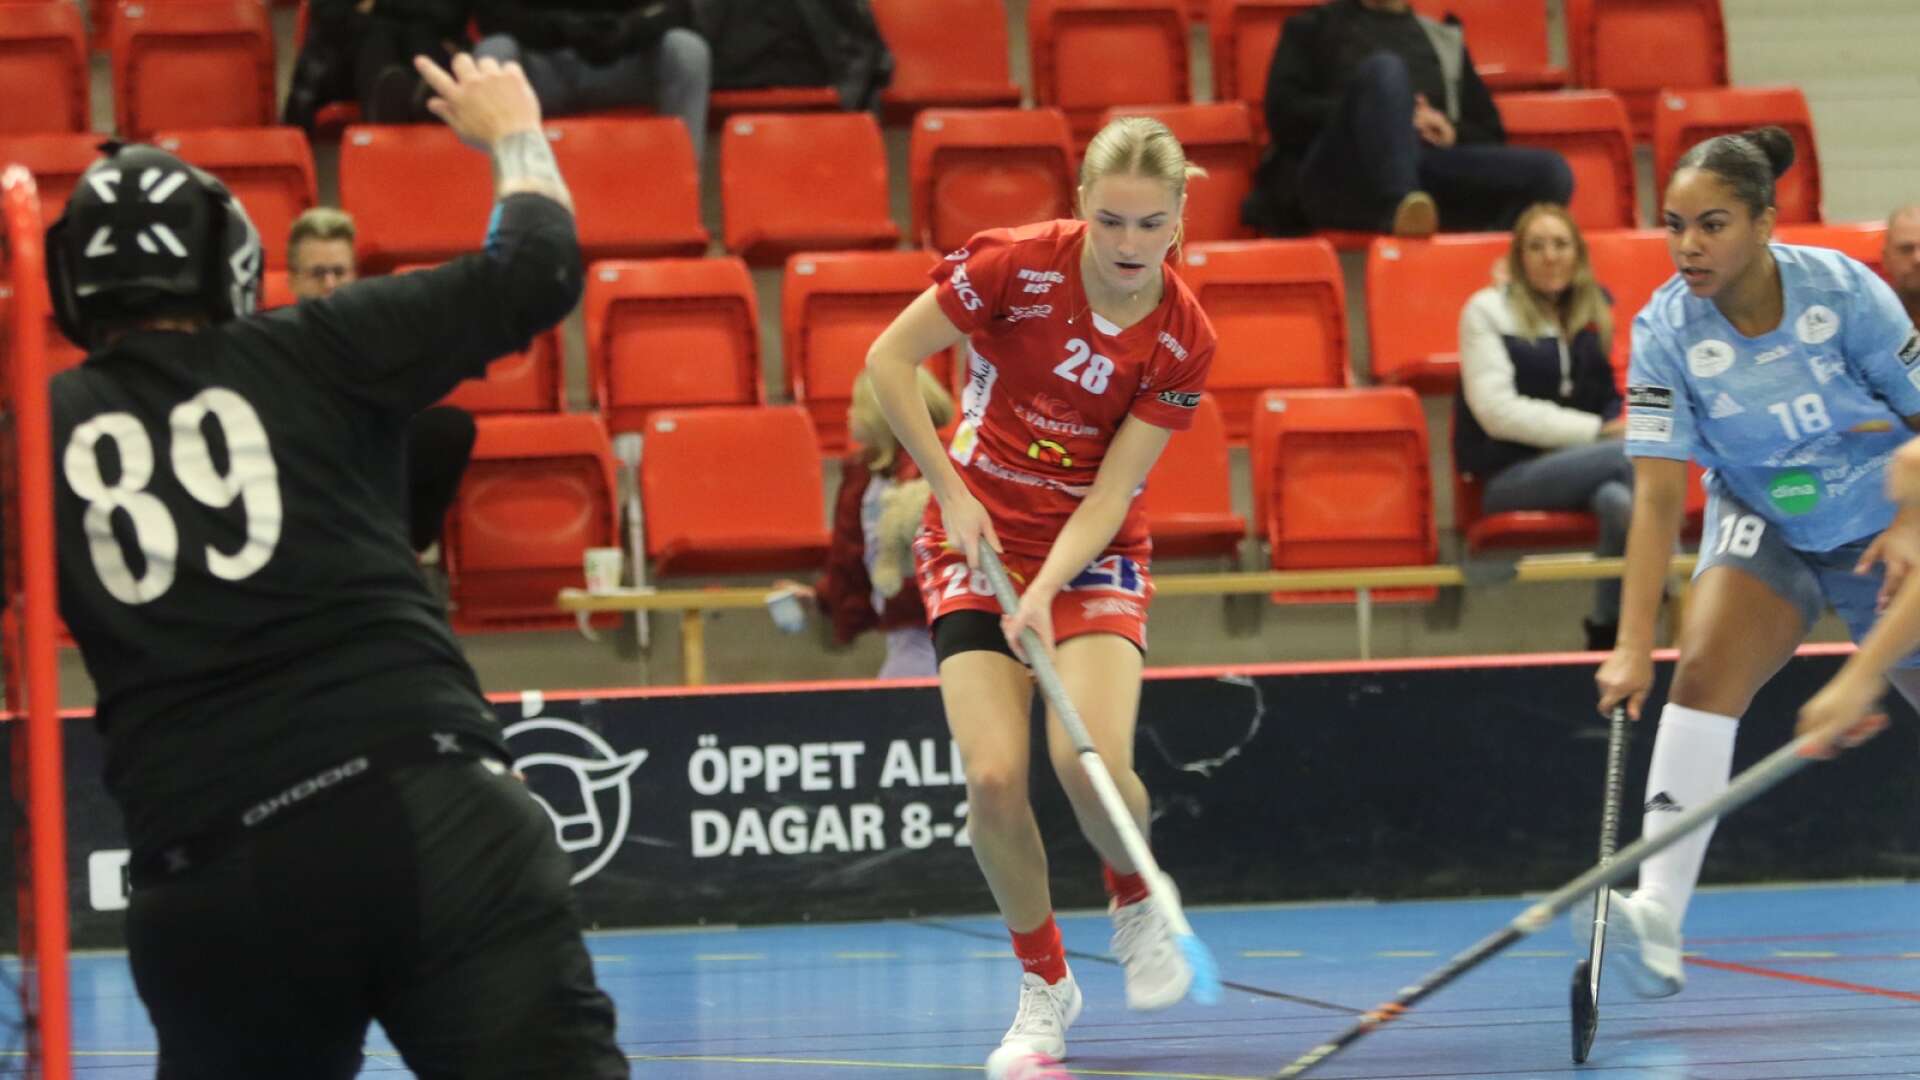 Lockeruds juniorgrupp och Inez Wallskog har varit vassa i damettan. Även i matchen mot Lidköping visade de upp sitt skickliga spel. 